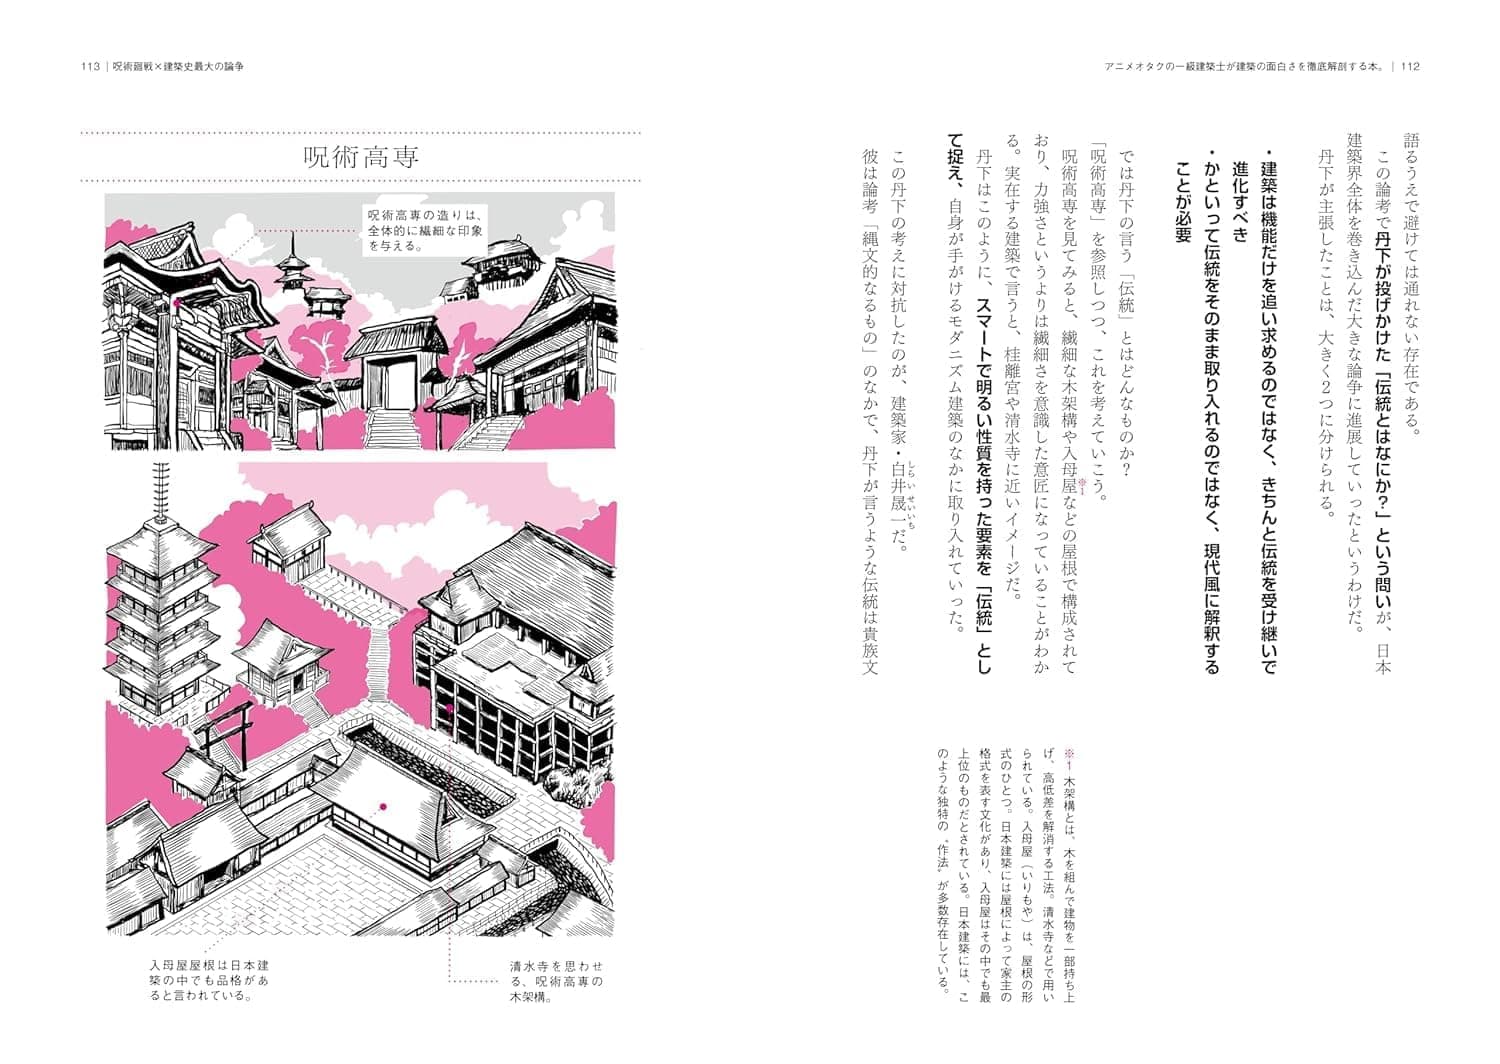 『アニメオタクの一級建築士が建築の面白さを徹底解剖する本。』が発売。「クッパ城」などを例にプロが建築を解説_001